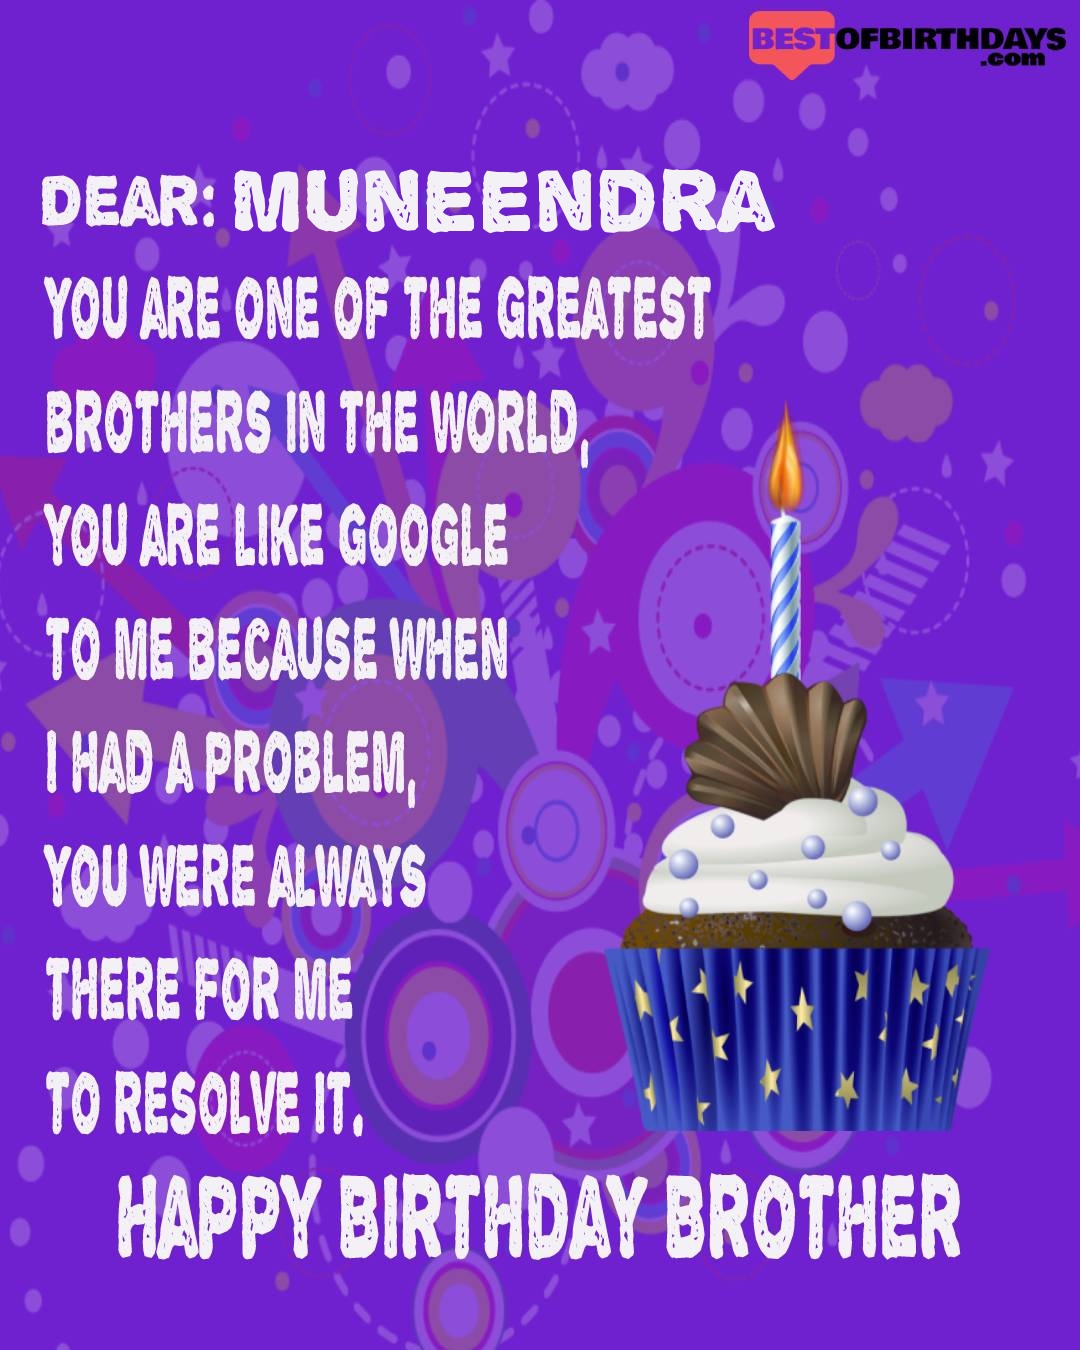 Happy birthday muneendra bhai brother bro